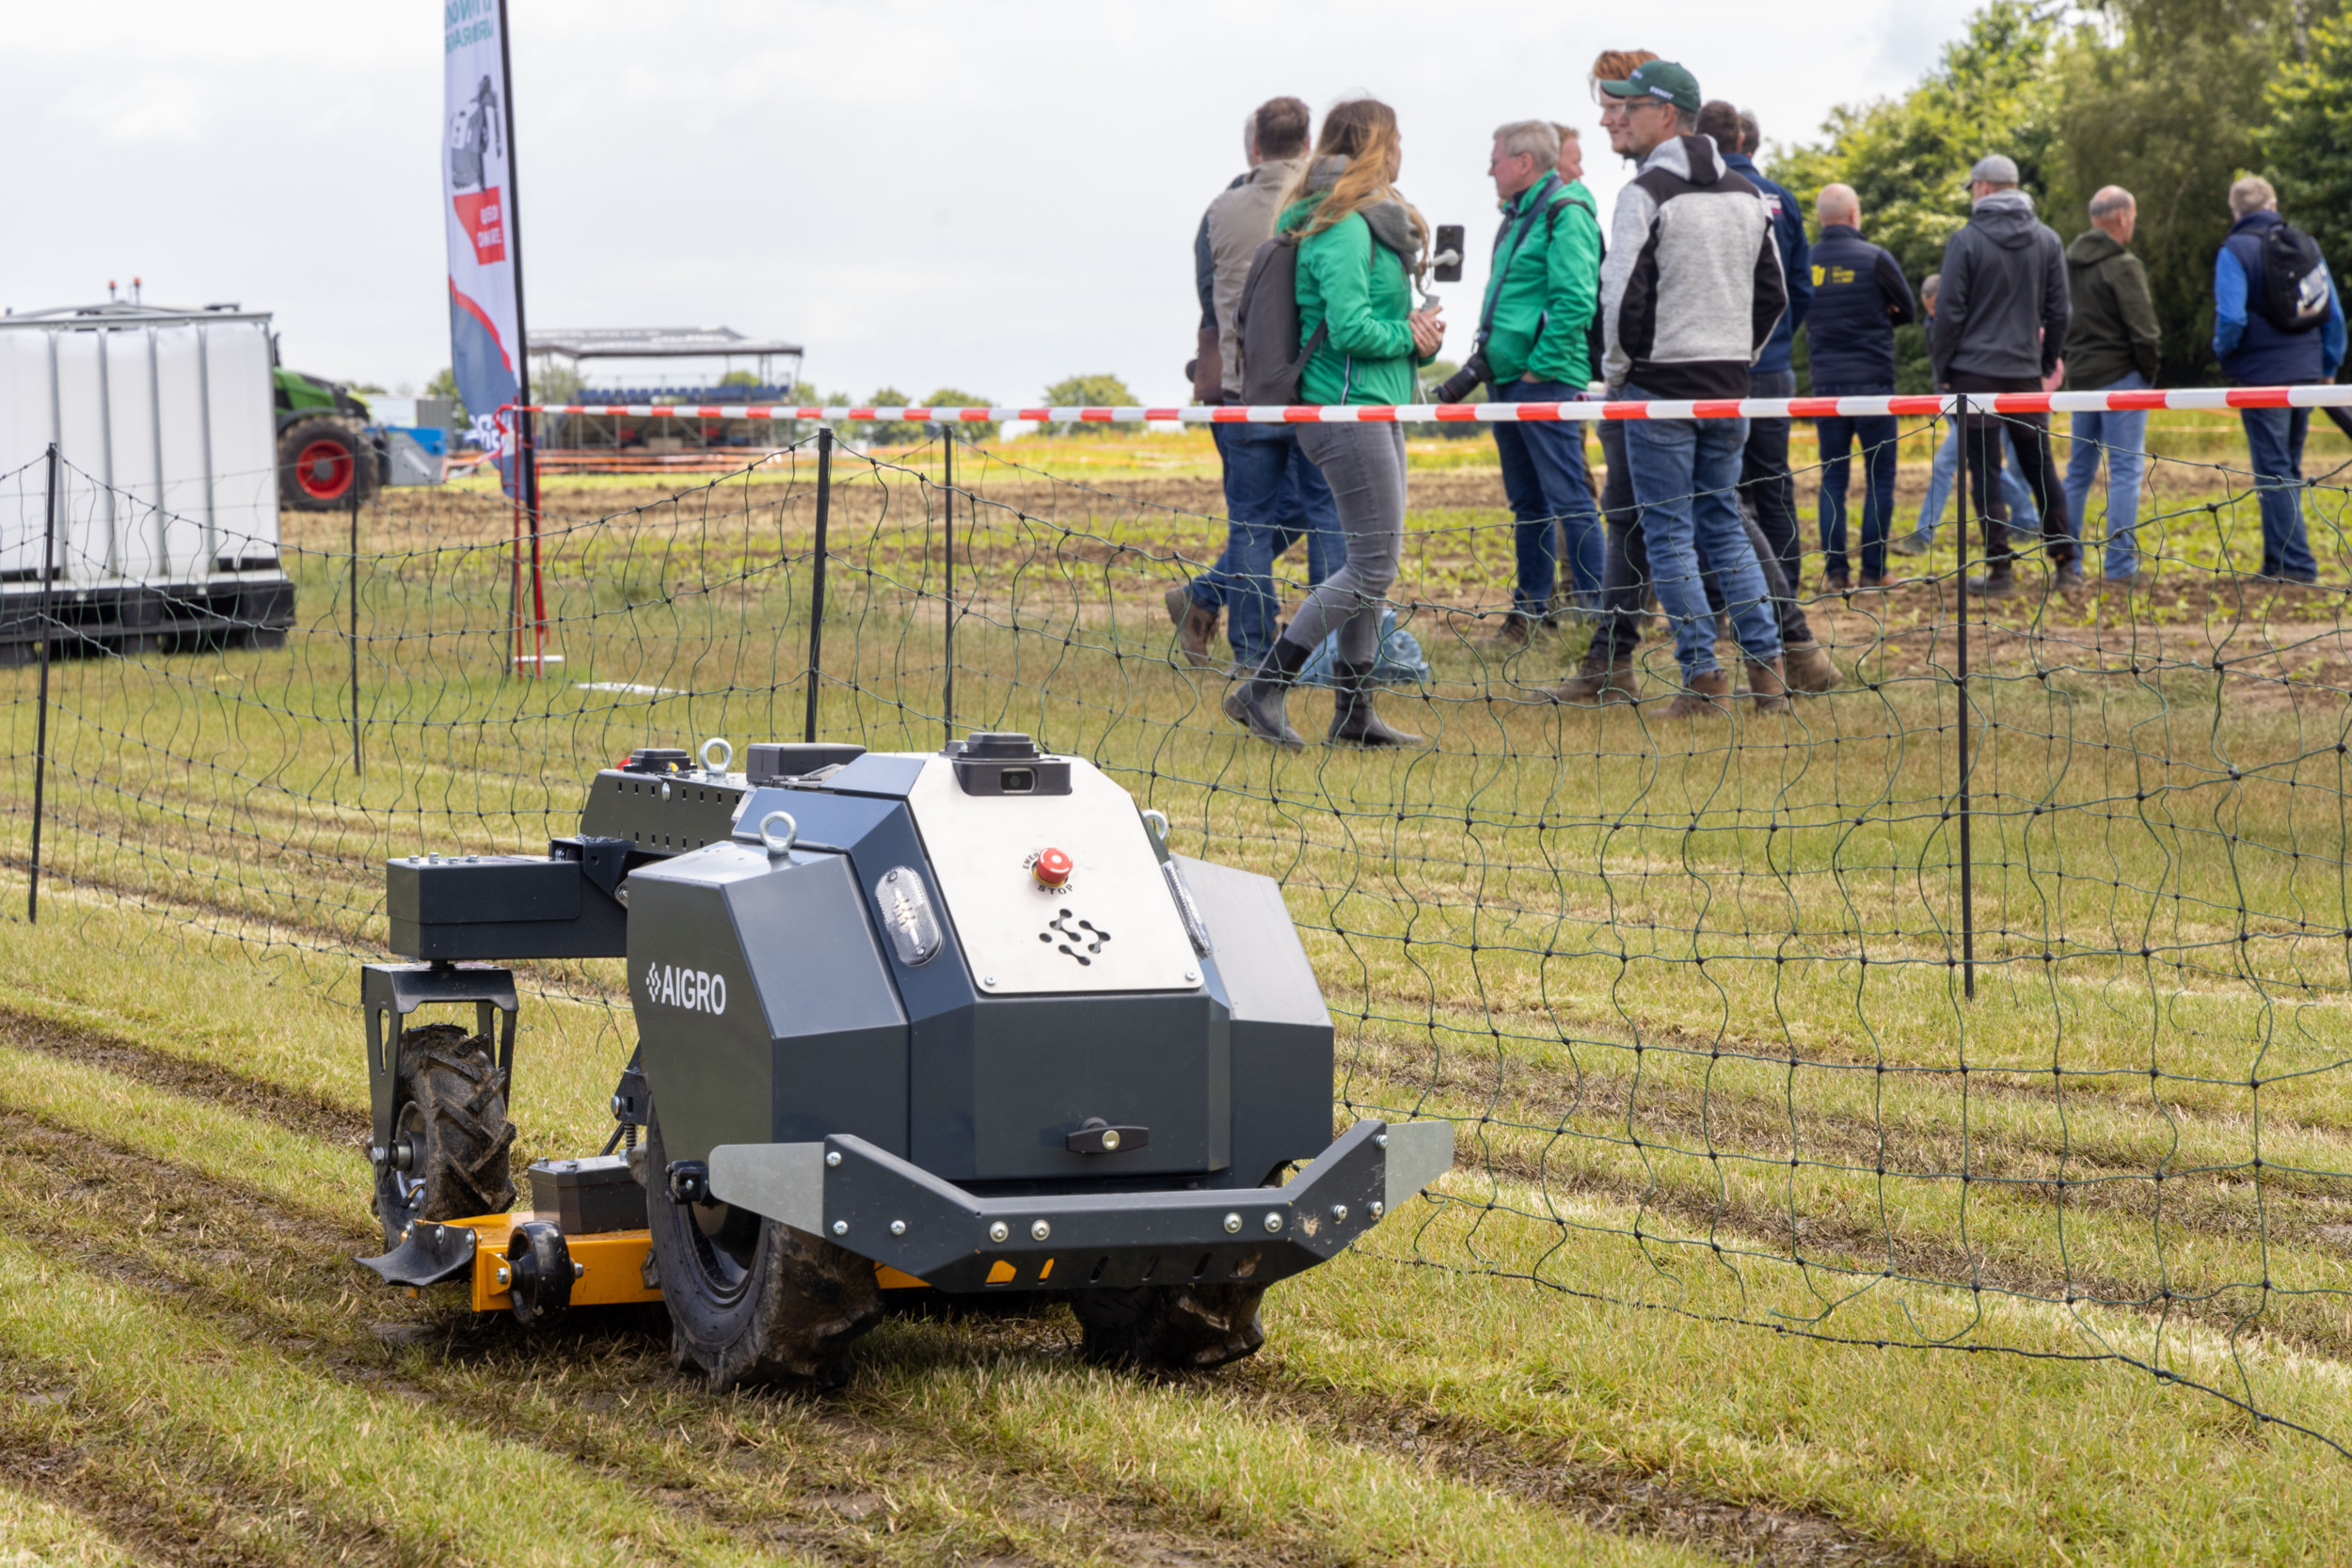 Een nieuw onderdeel van de DLG Feldtage is het FarmRobotix-programma. De kleine elektrische Up-veldrobot van de Nederlandse start-up Aigro reed tijdens de buitenbeurs een vast patroon waarbij het gras tussen de denkbeeldige rijen (fruit) bomen gemaaid werd. Dat is een van de werkzaamheden waarvoor de kleine robot bedoeld is. Aigro heeft ondertussen al een aantal Ups verkocht. – Foto’s: Koos Groenewold